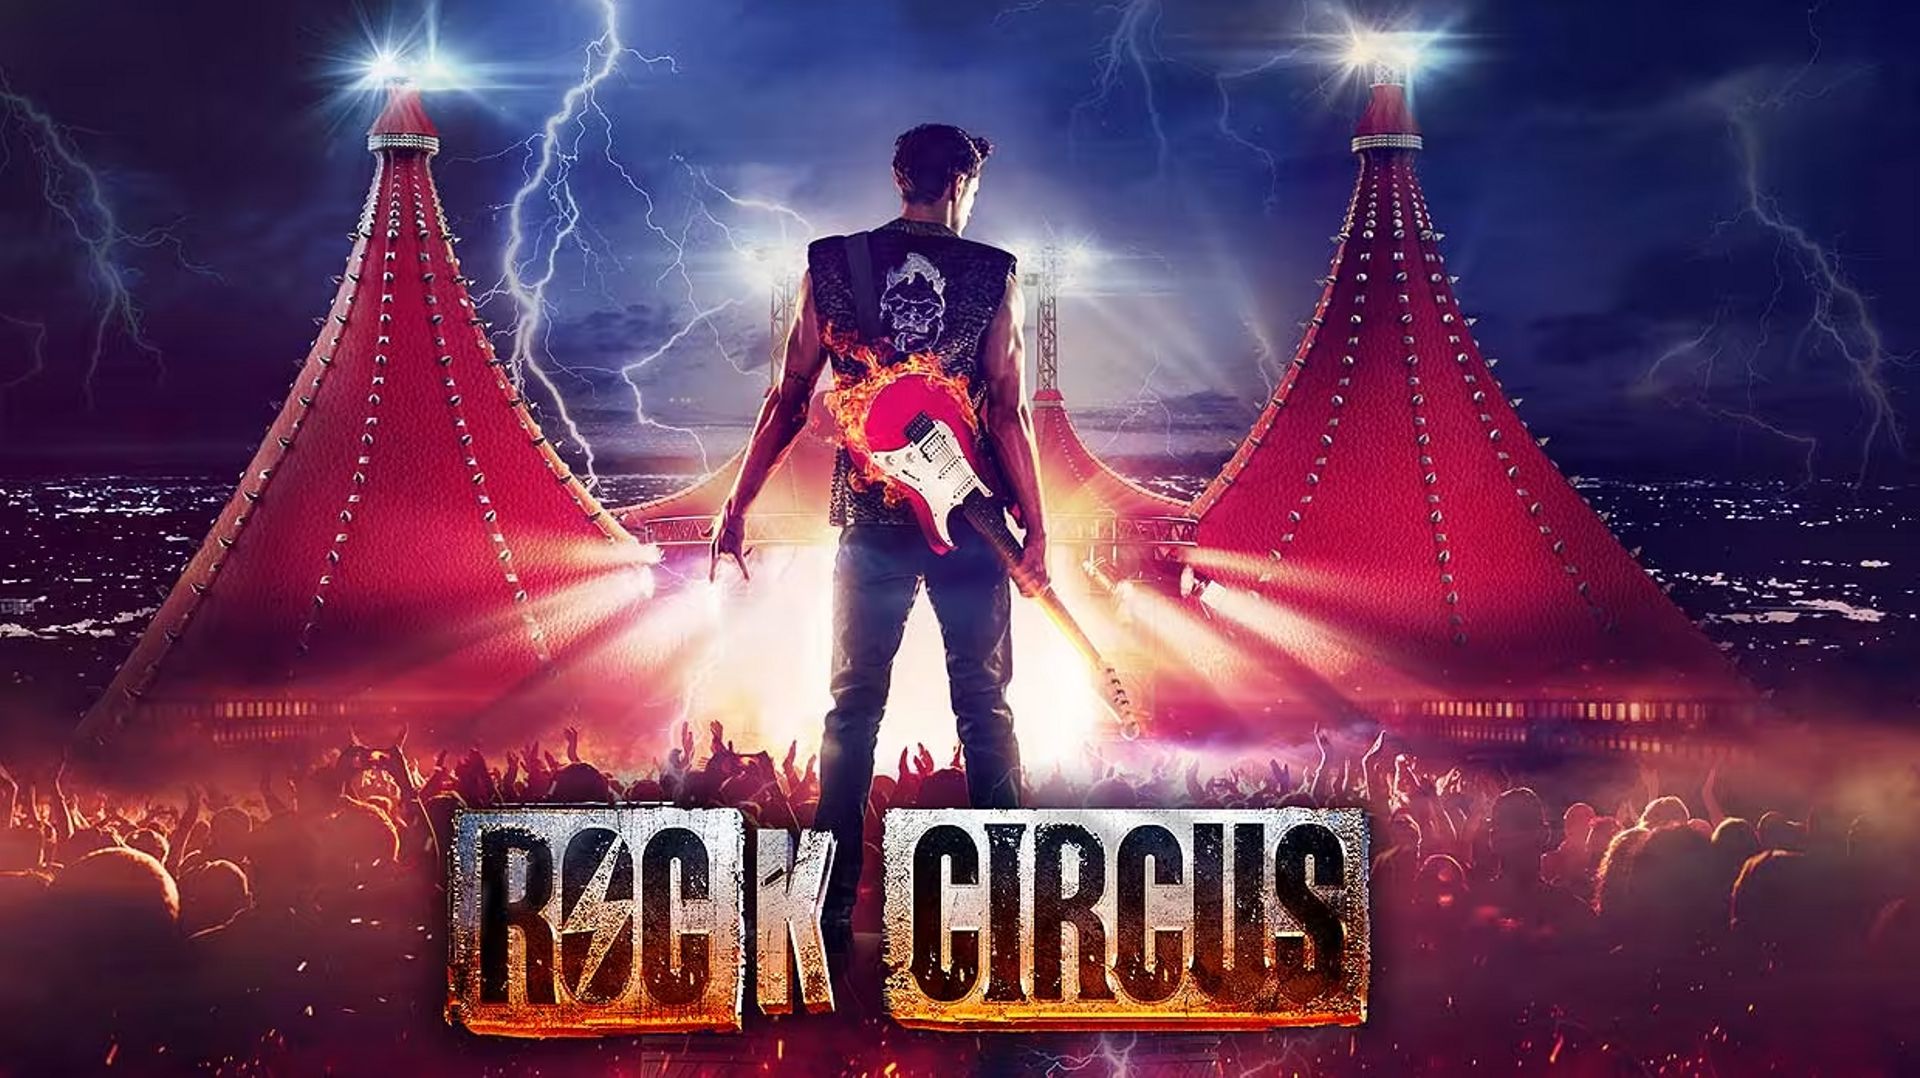 Un ‘circus rock’ con música de AC/DC, Metallica, Iron Maiden y más se ha lanzado en España y tiene pinta de loco